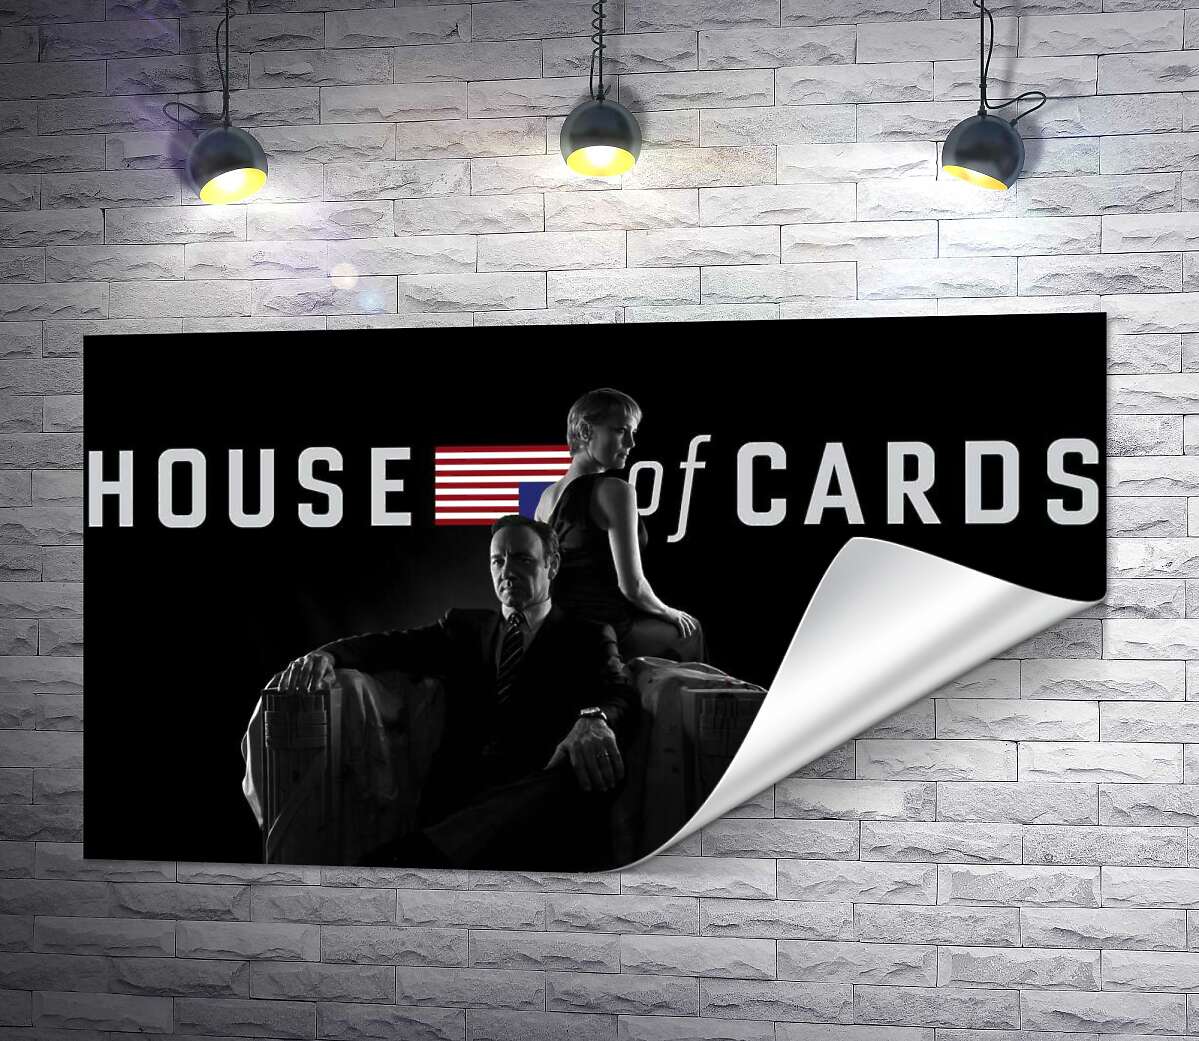 печать Главные герои – супруги, на постере к сериалу "Карточный дом" (House of cards)